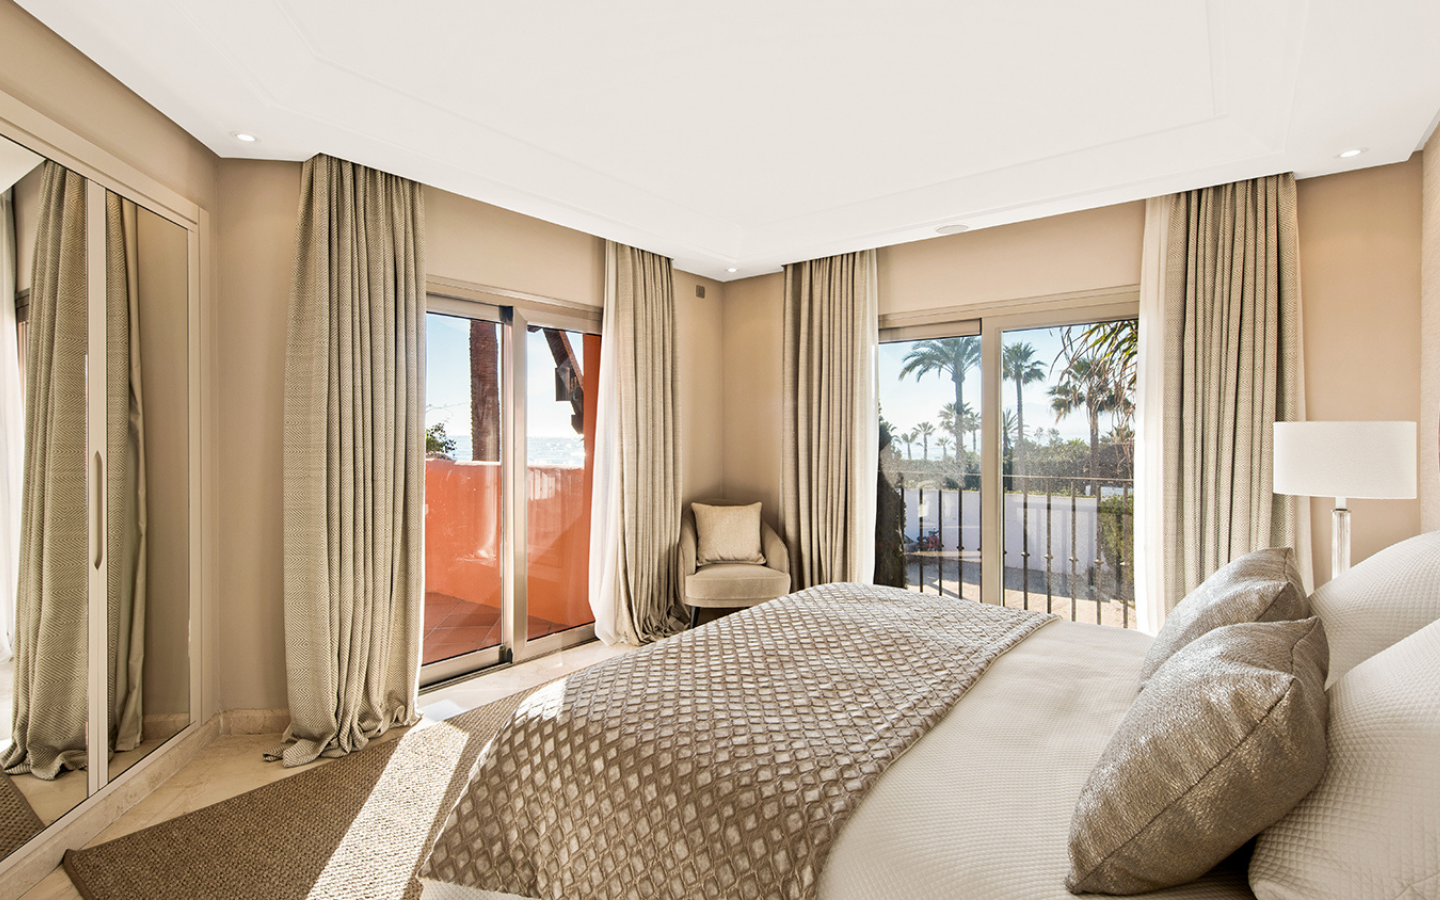 Penthouse exceptionnel en bord de mer à Marbella,